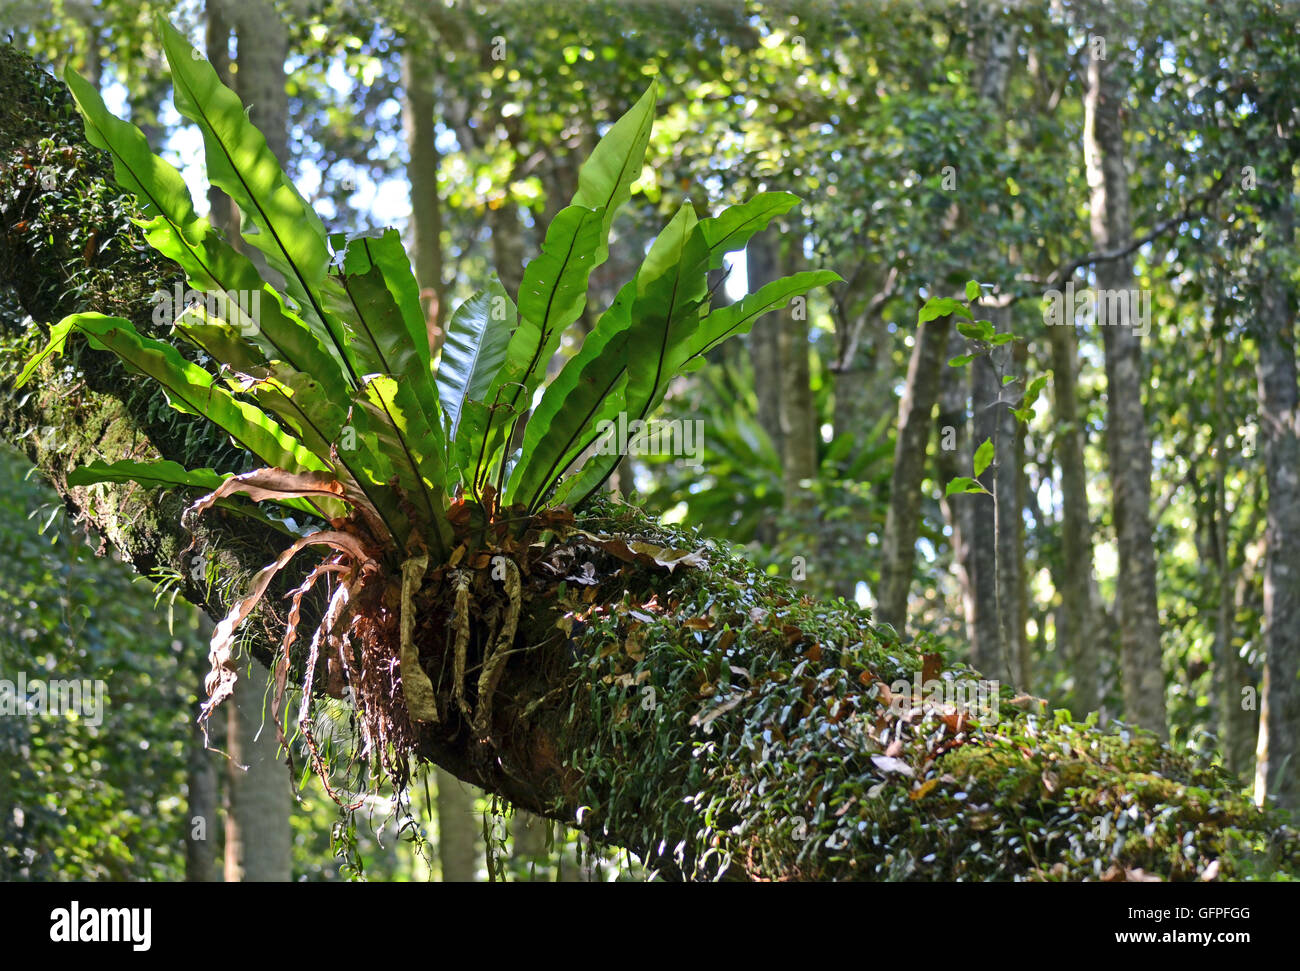 Australian birdsnest fern (asplenium australasicum) cresce su una struttura ad albero nella parte orientale della foresta pluviale australiana. Foto Stock